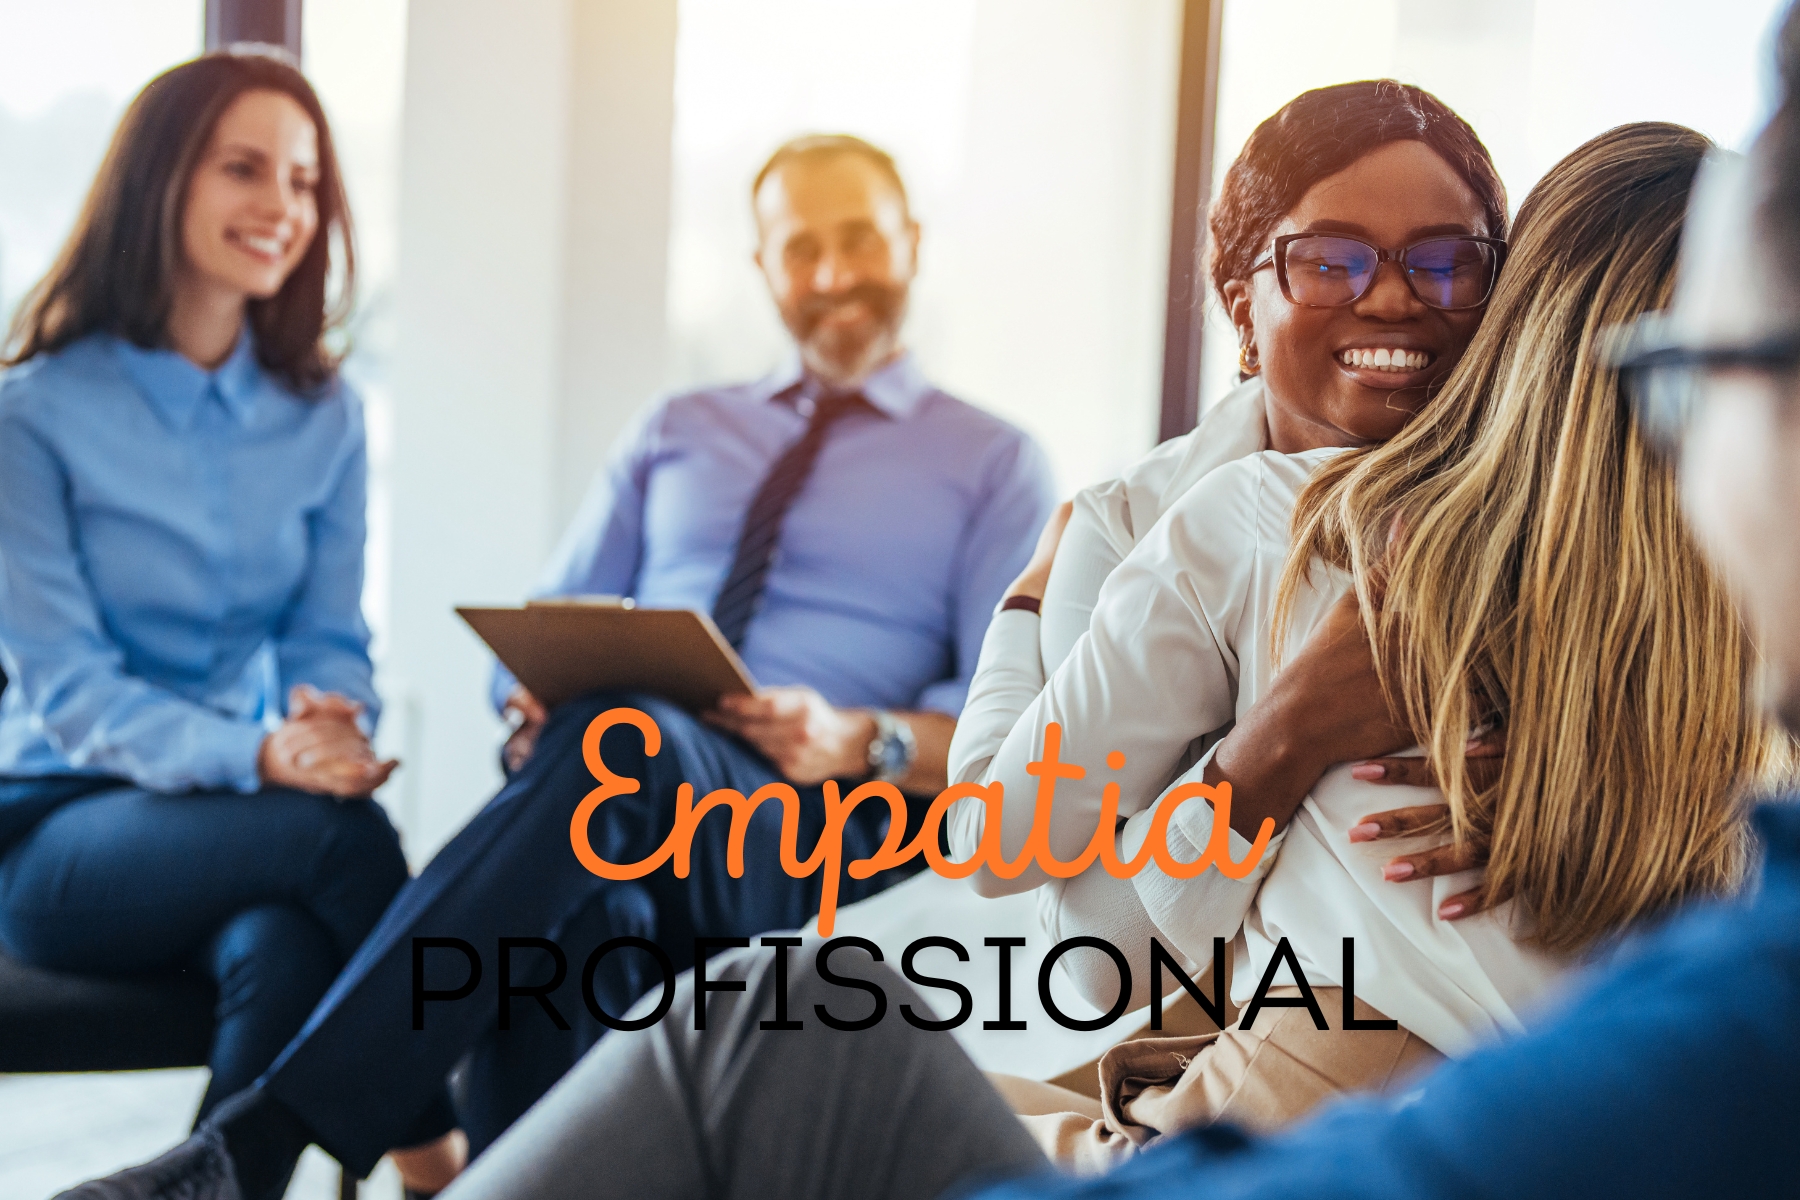 Descubra o que é empatia, sua importância no ambiente profissional e como desenvolvê-la para criar uma equipe mais coesa e produtiva.